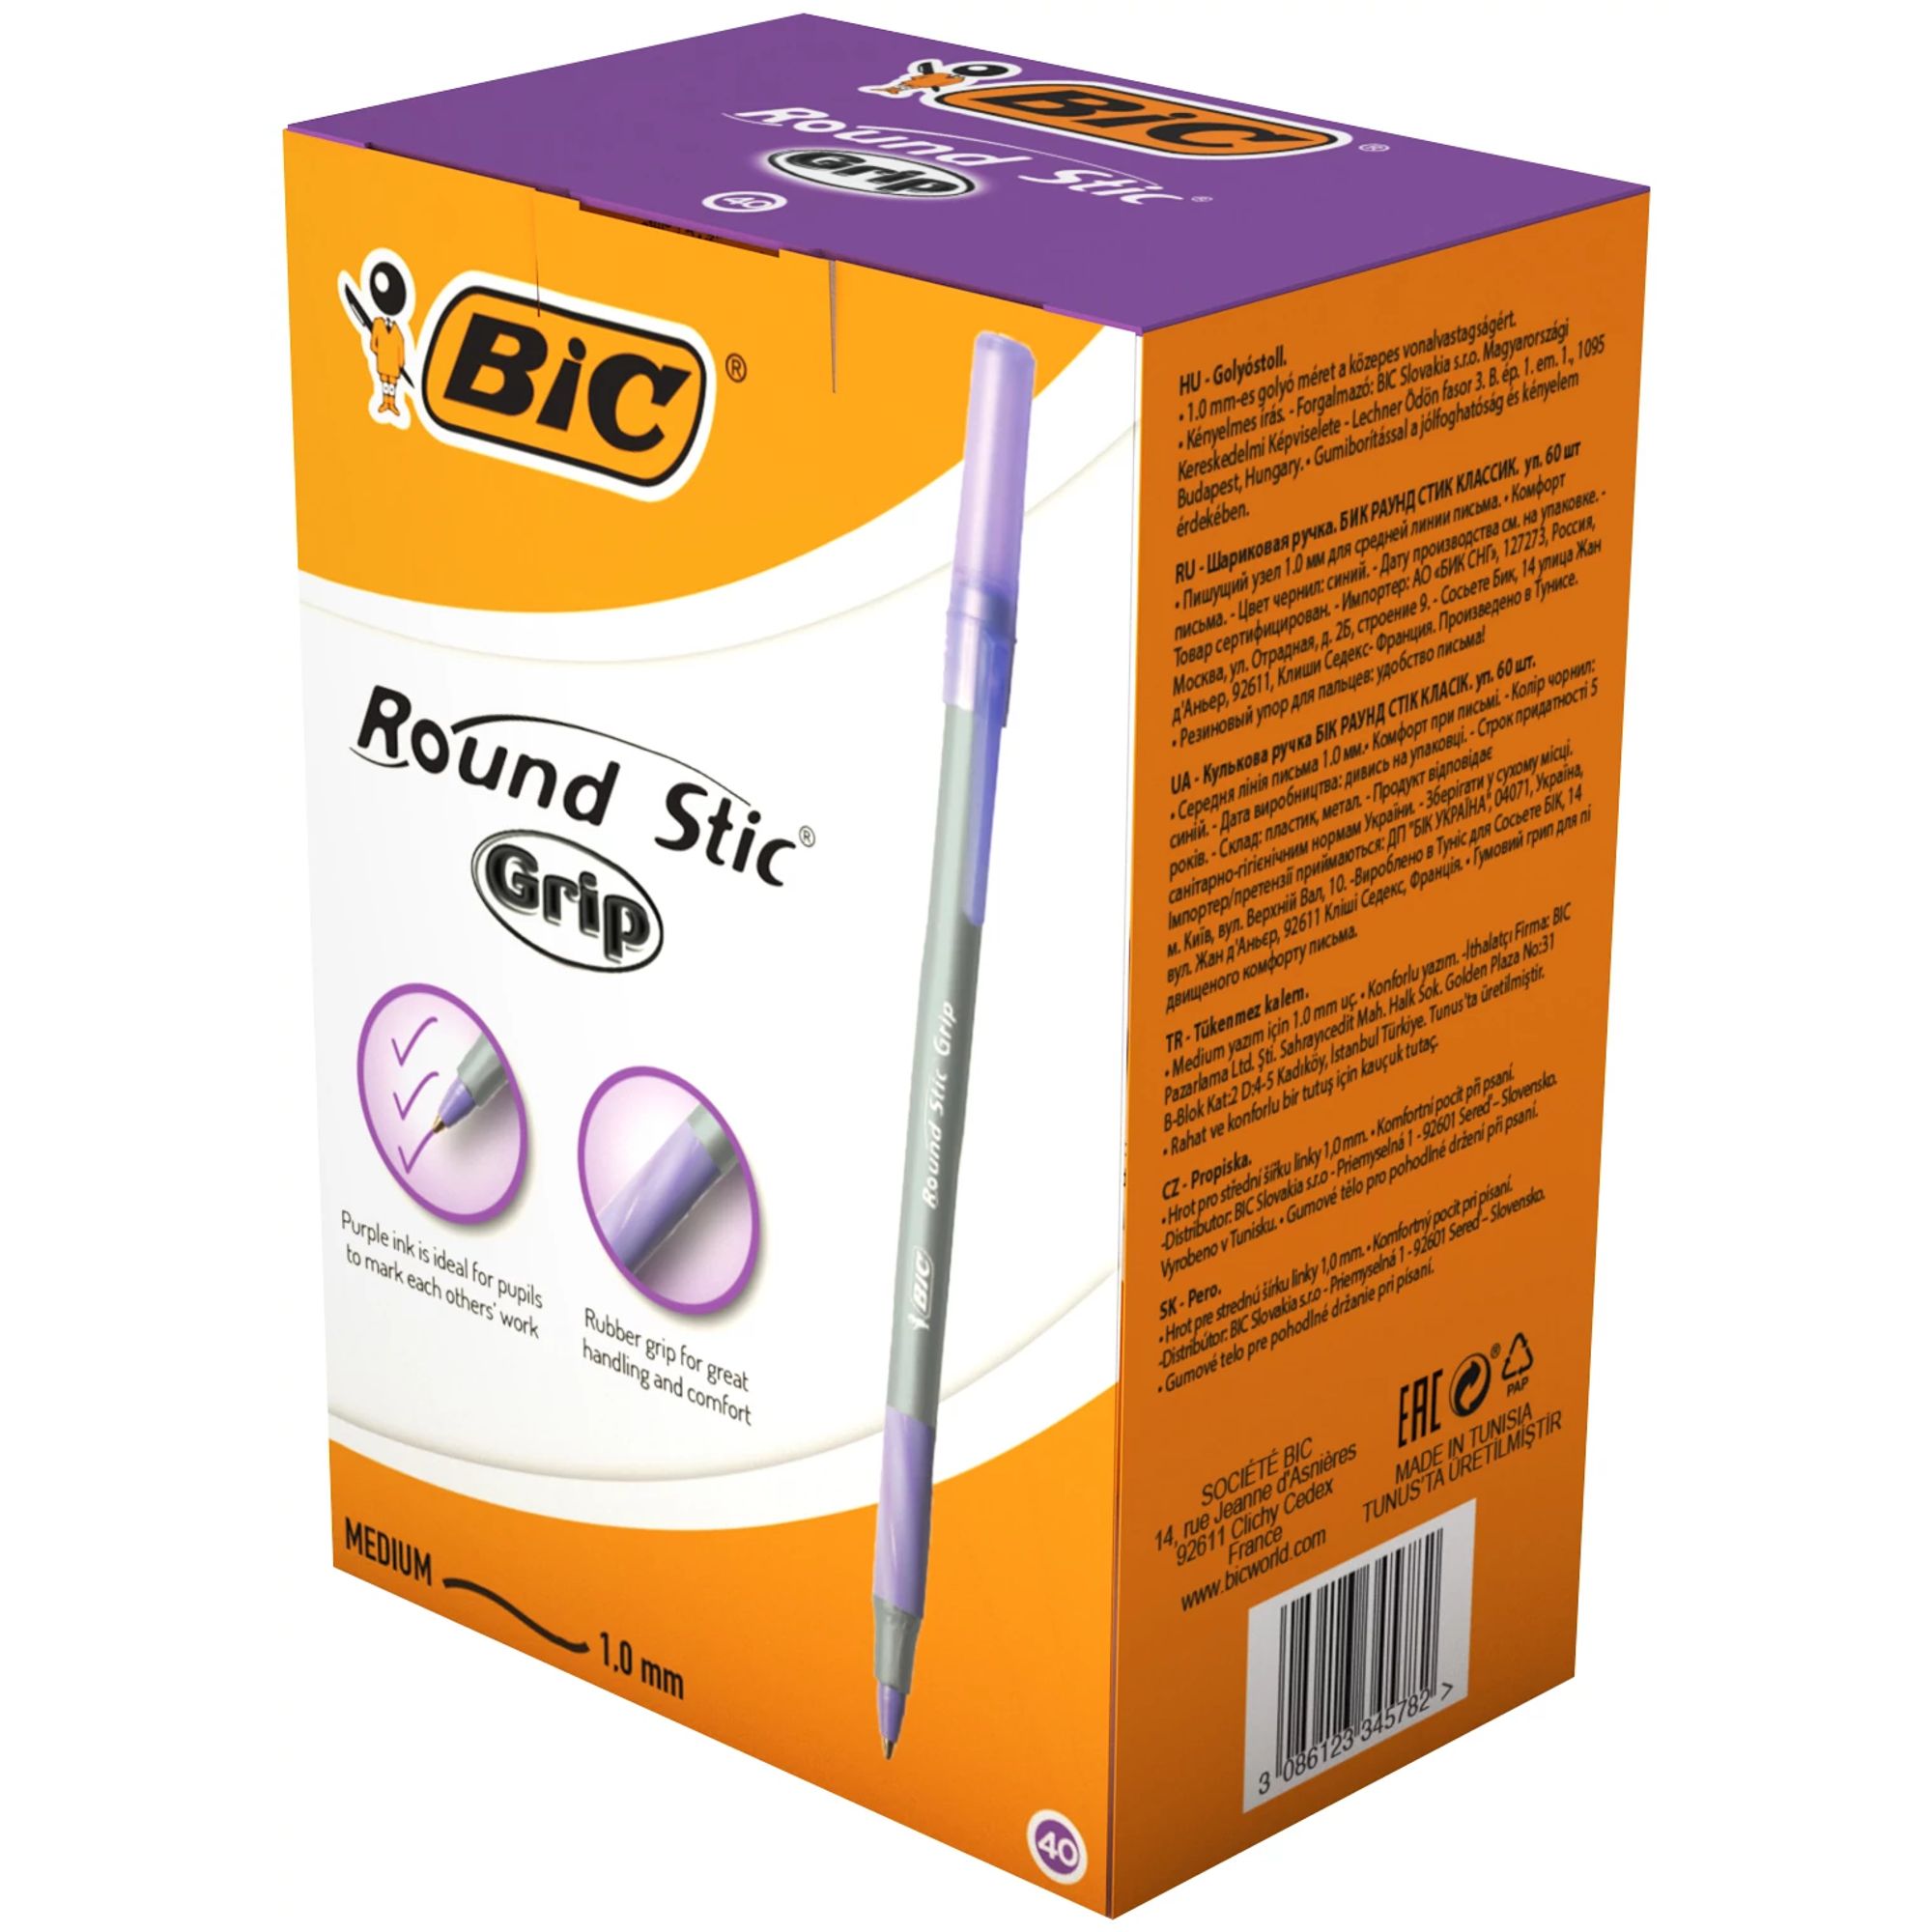 Bic Round Stic Grip Med Purple